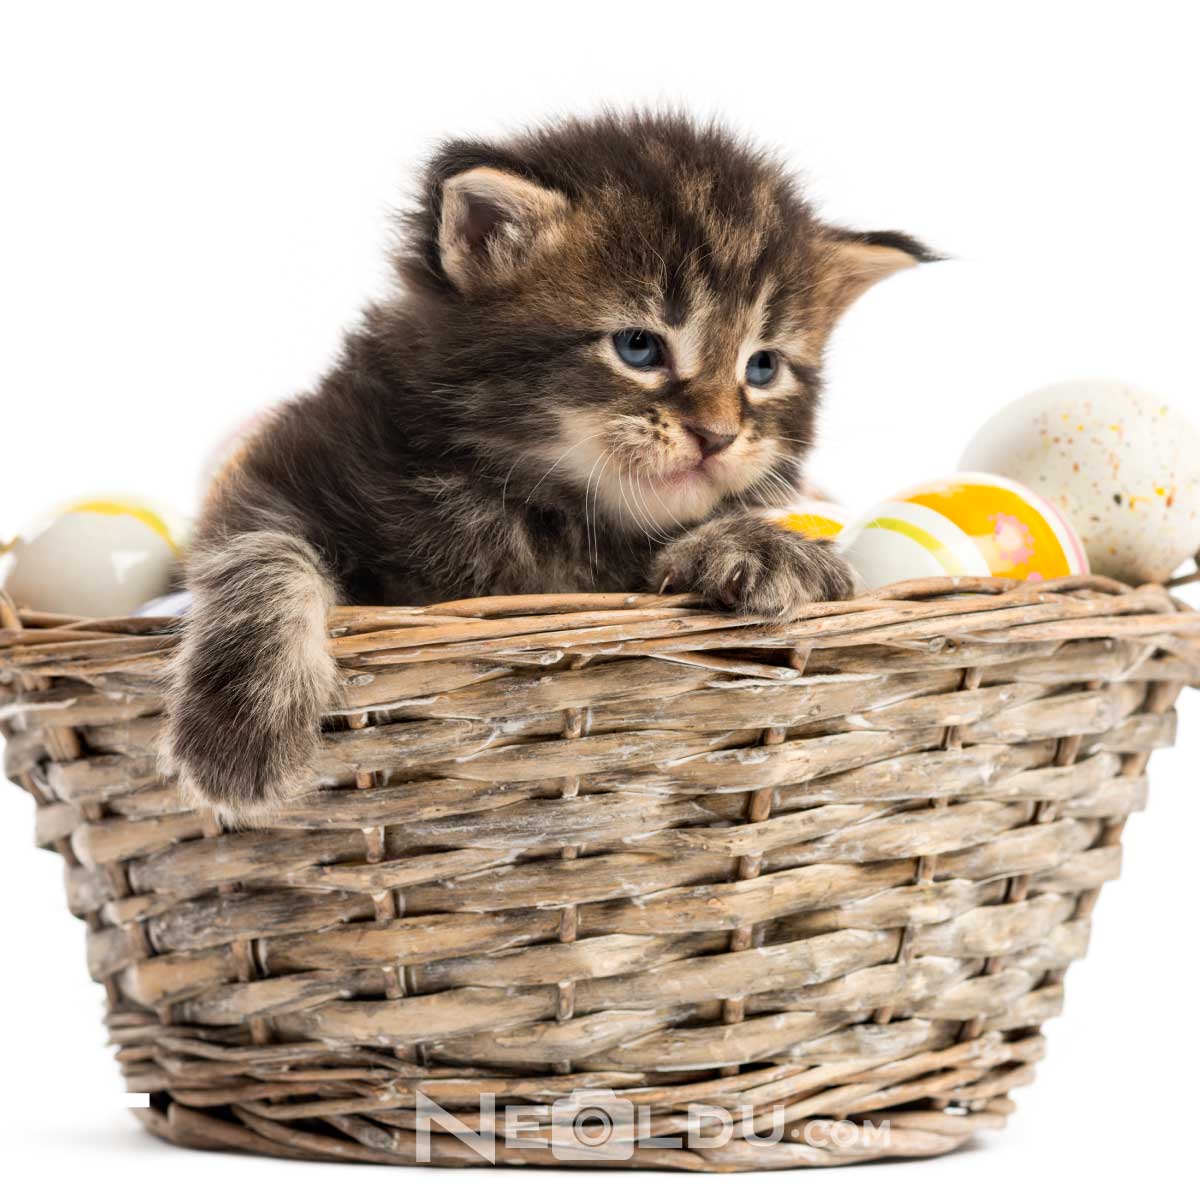 Kediler yumurta yer mi